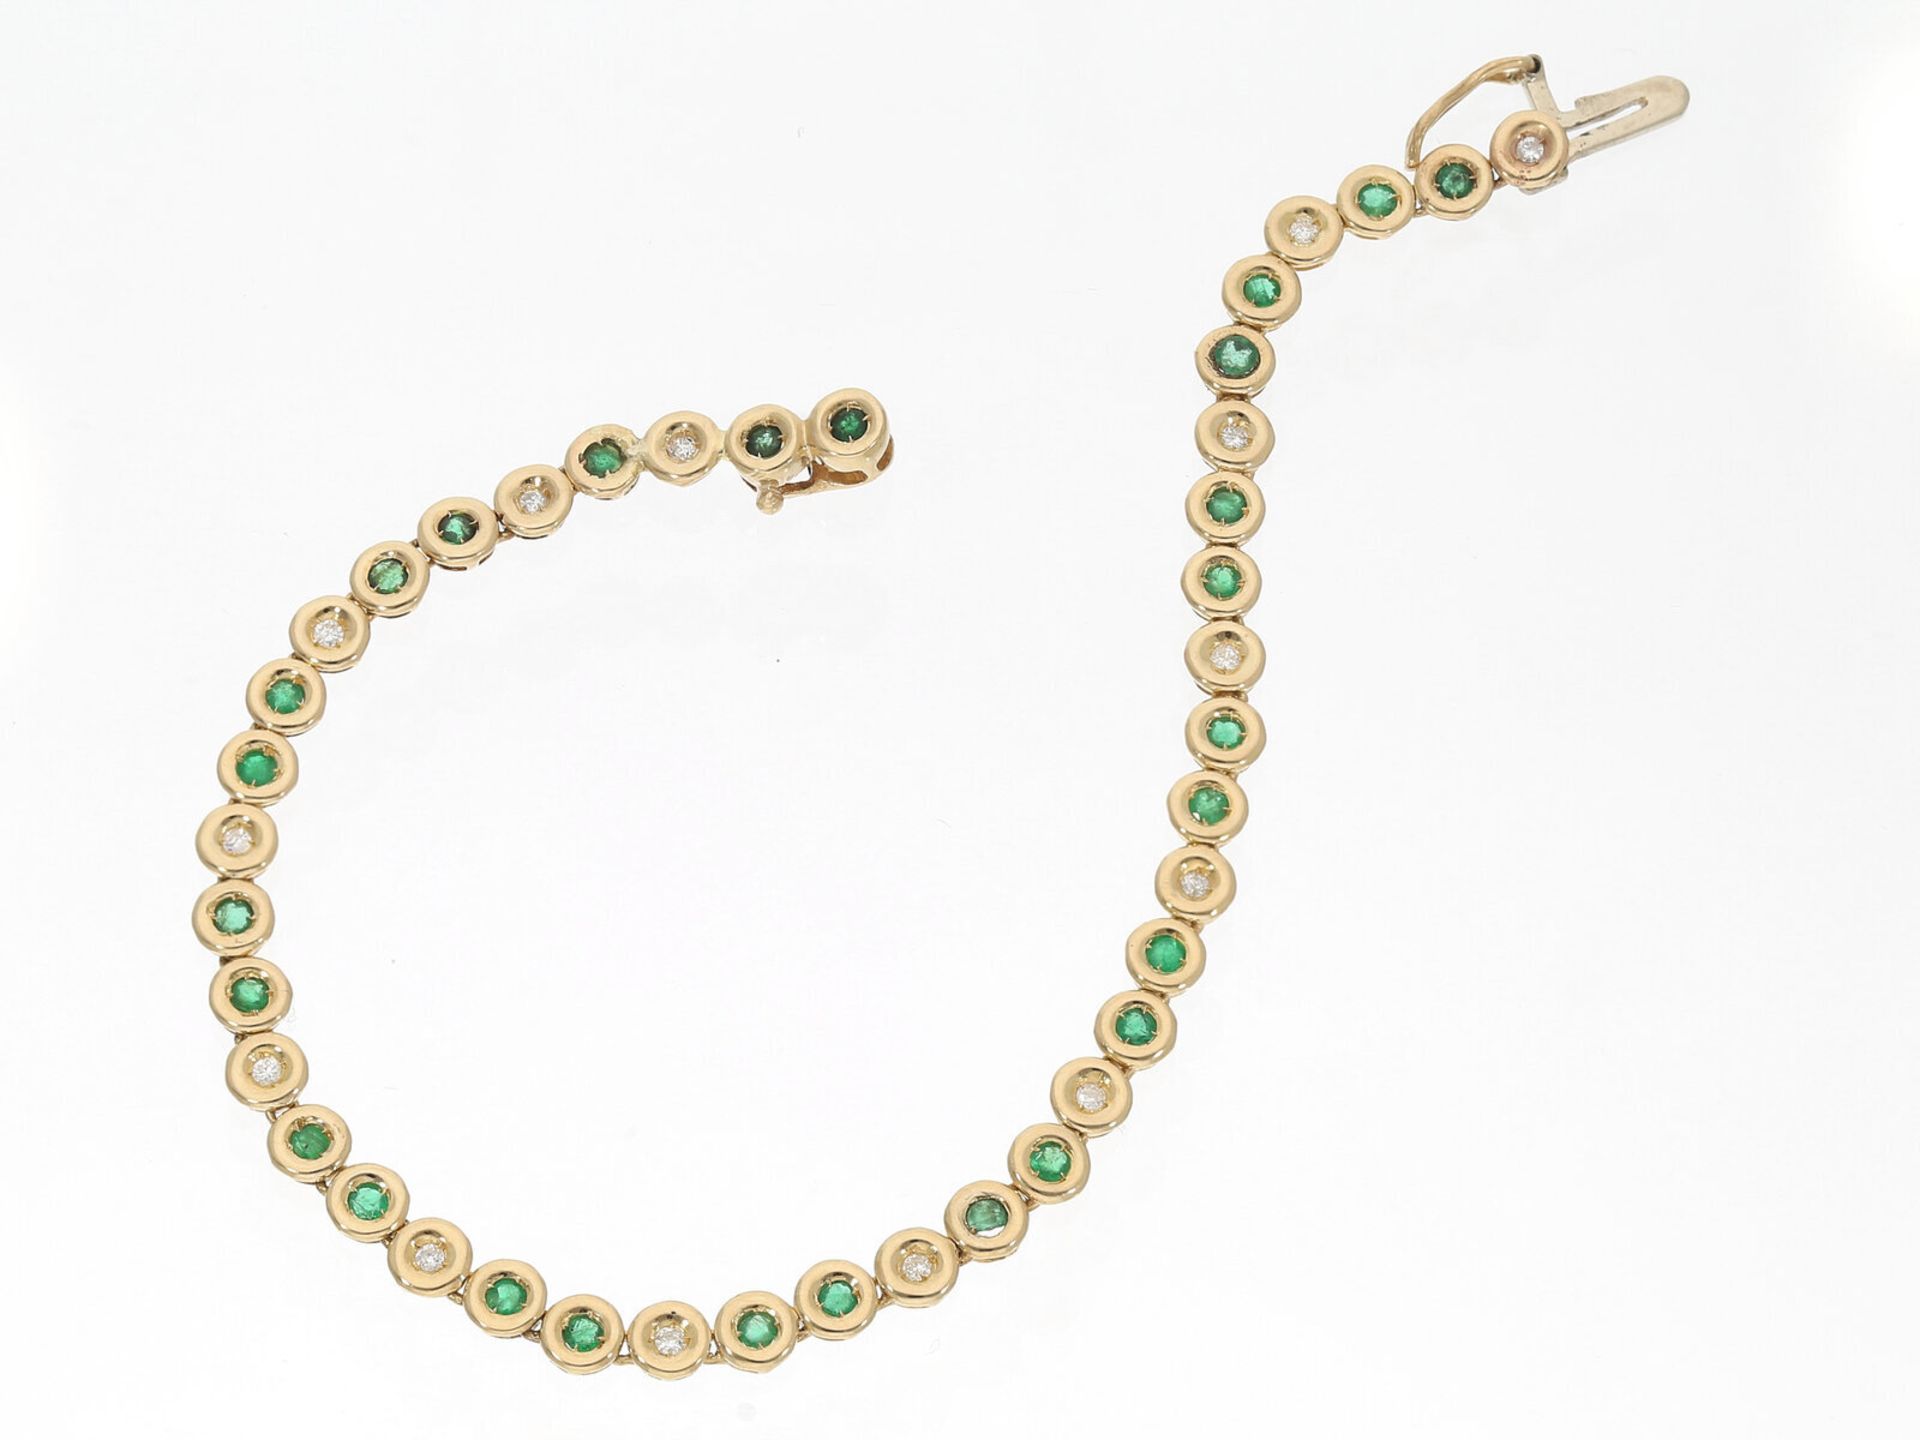 Zierliches goldenes Tennis-Armband mit Smaragd- und Brillantbesatz, 18K Gold